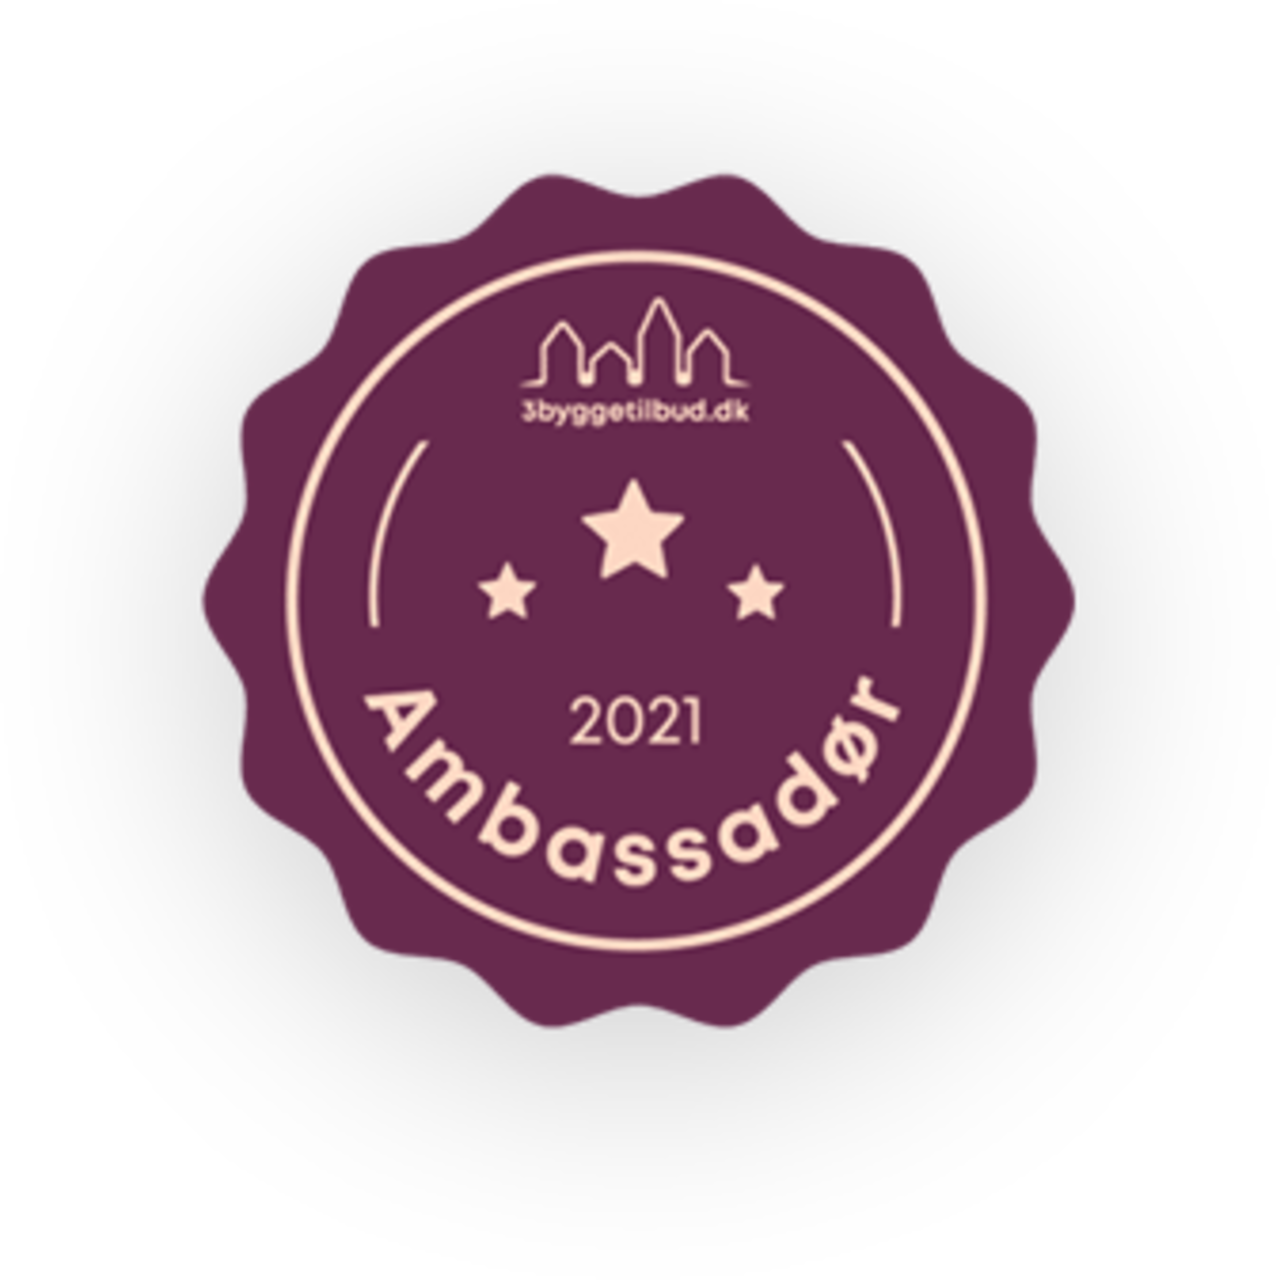 2021 ambassadør